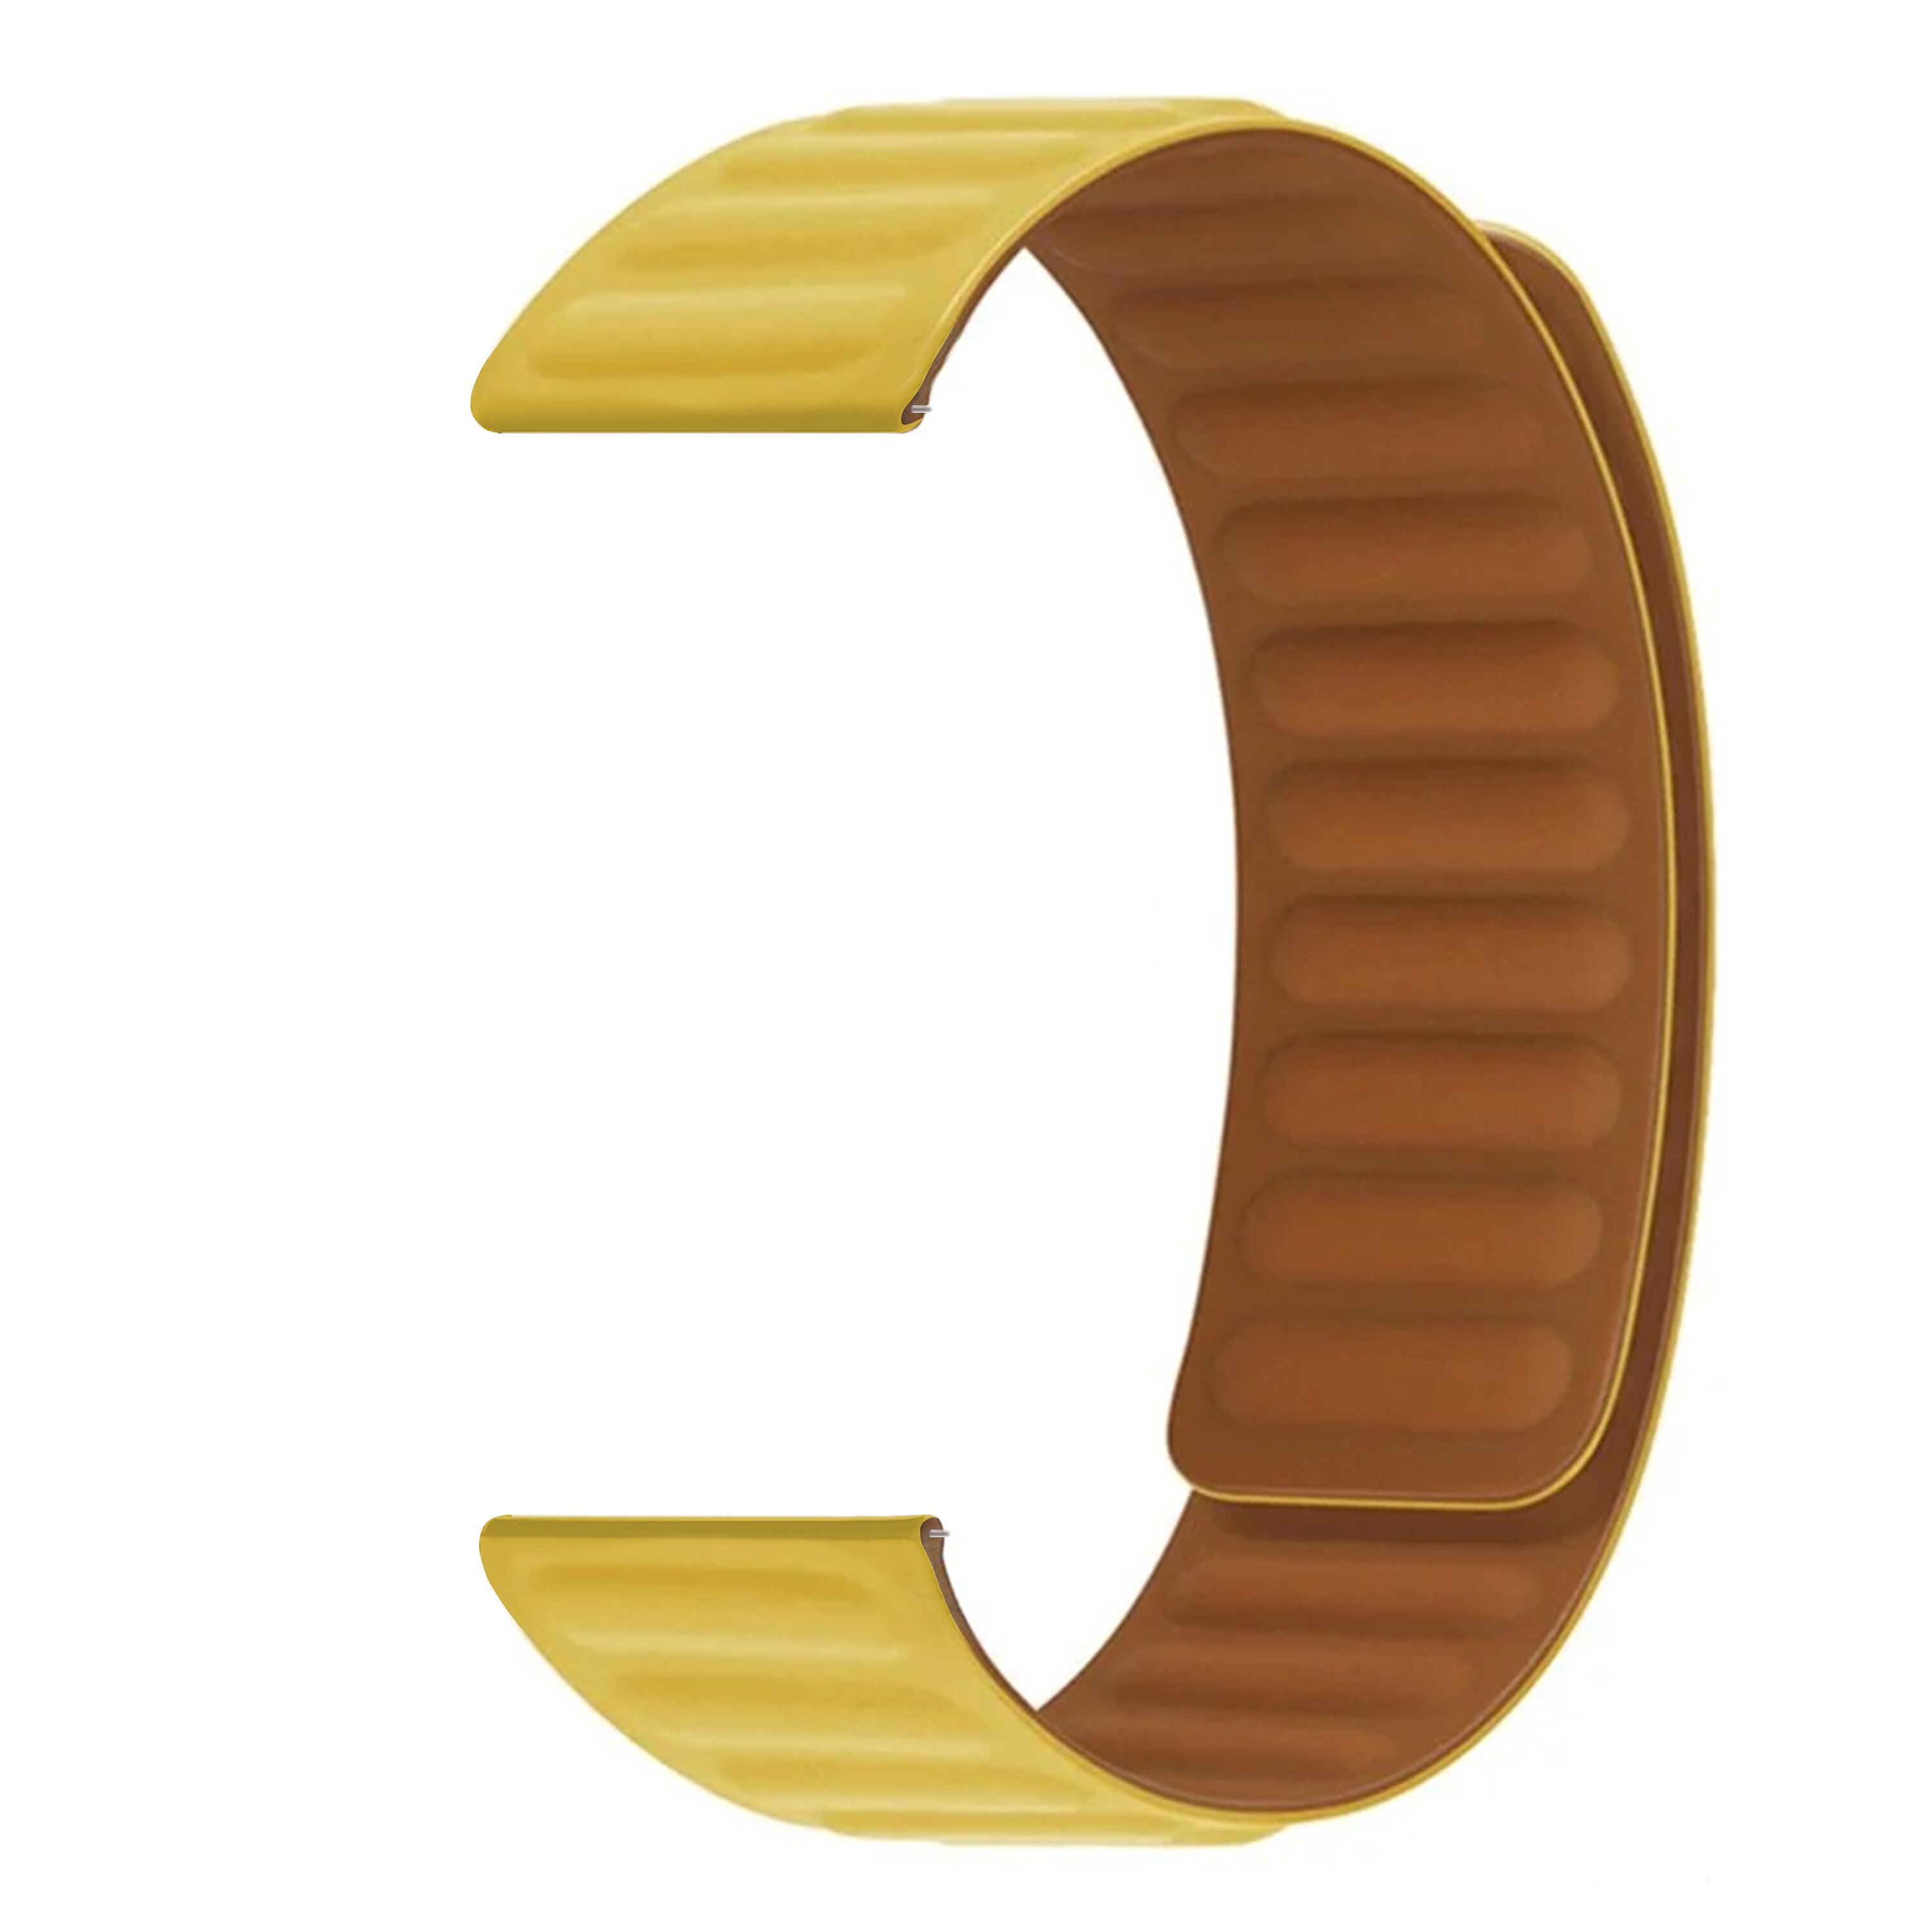 Bracelet magnétique en silicone Hama Fit Watch 6910, jaune